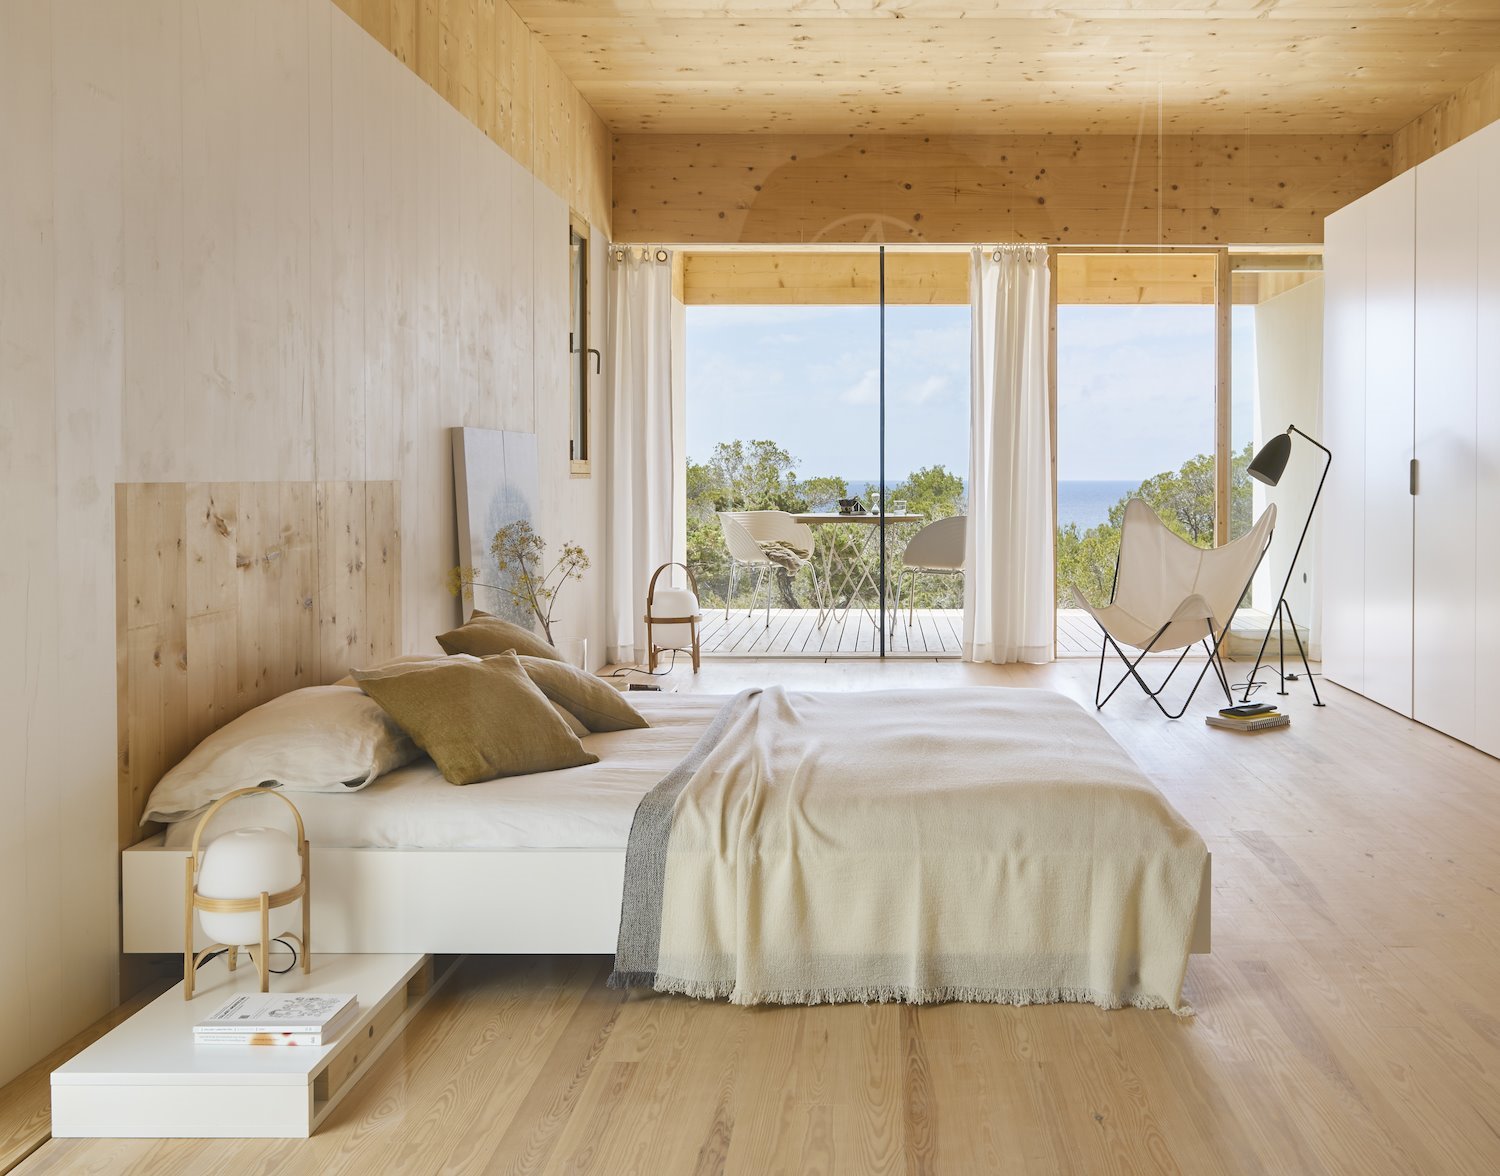 Dormitorio con revestimientos de madera y una cama con ropa blanca y color crema.